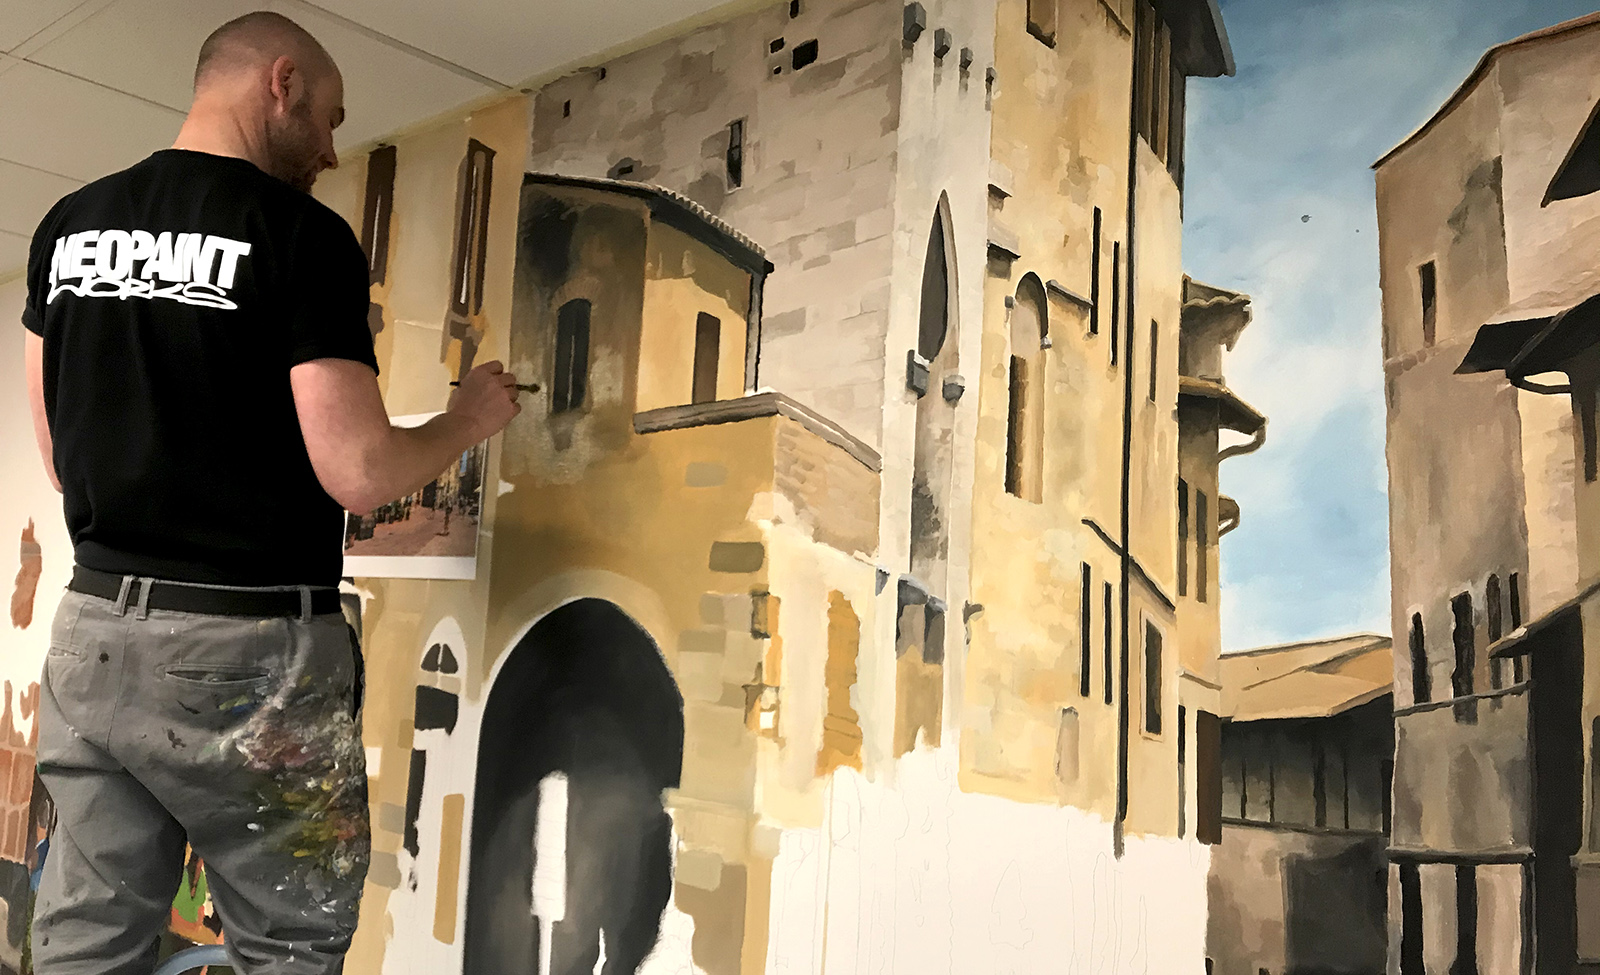 olasz kisváros falfestmény - neopaint works